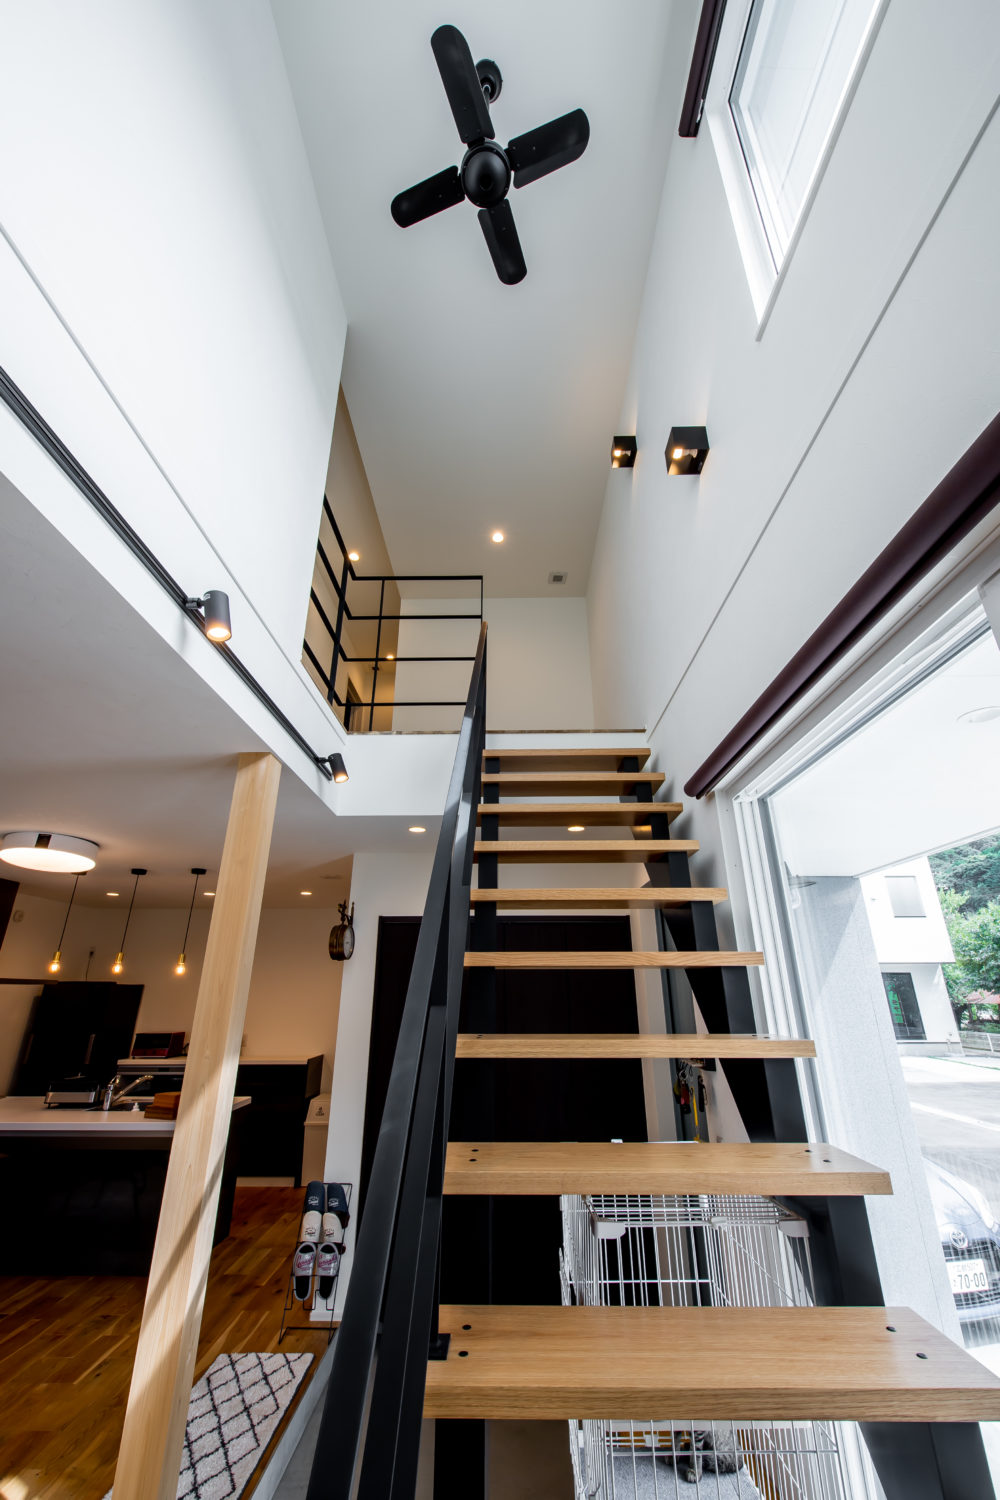 アイデザインホーム
注文住宅
広島県広島市
階段吹抜を利用して日中はたっぷり採光が得られます